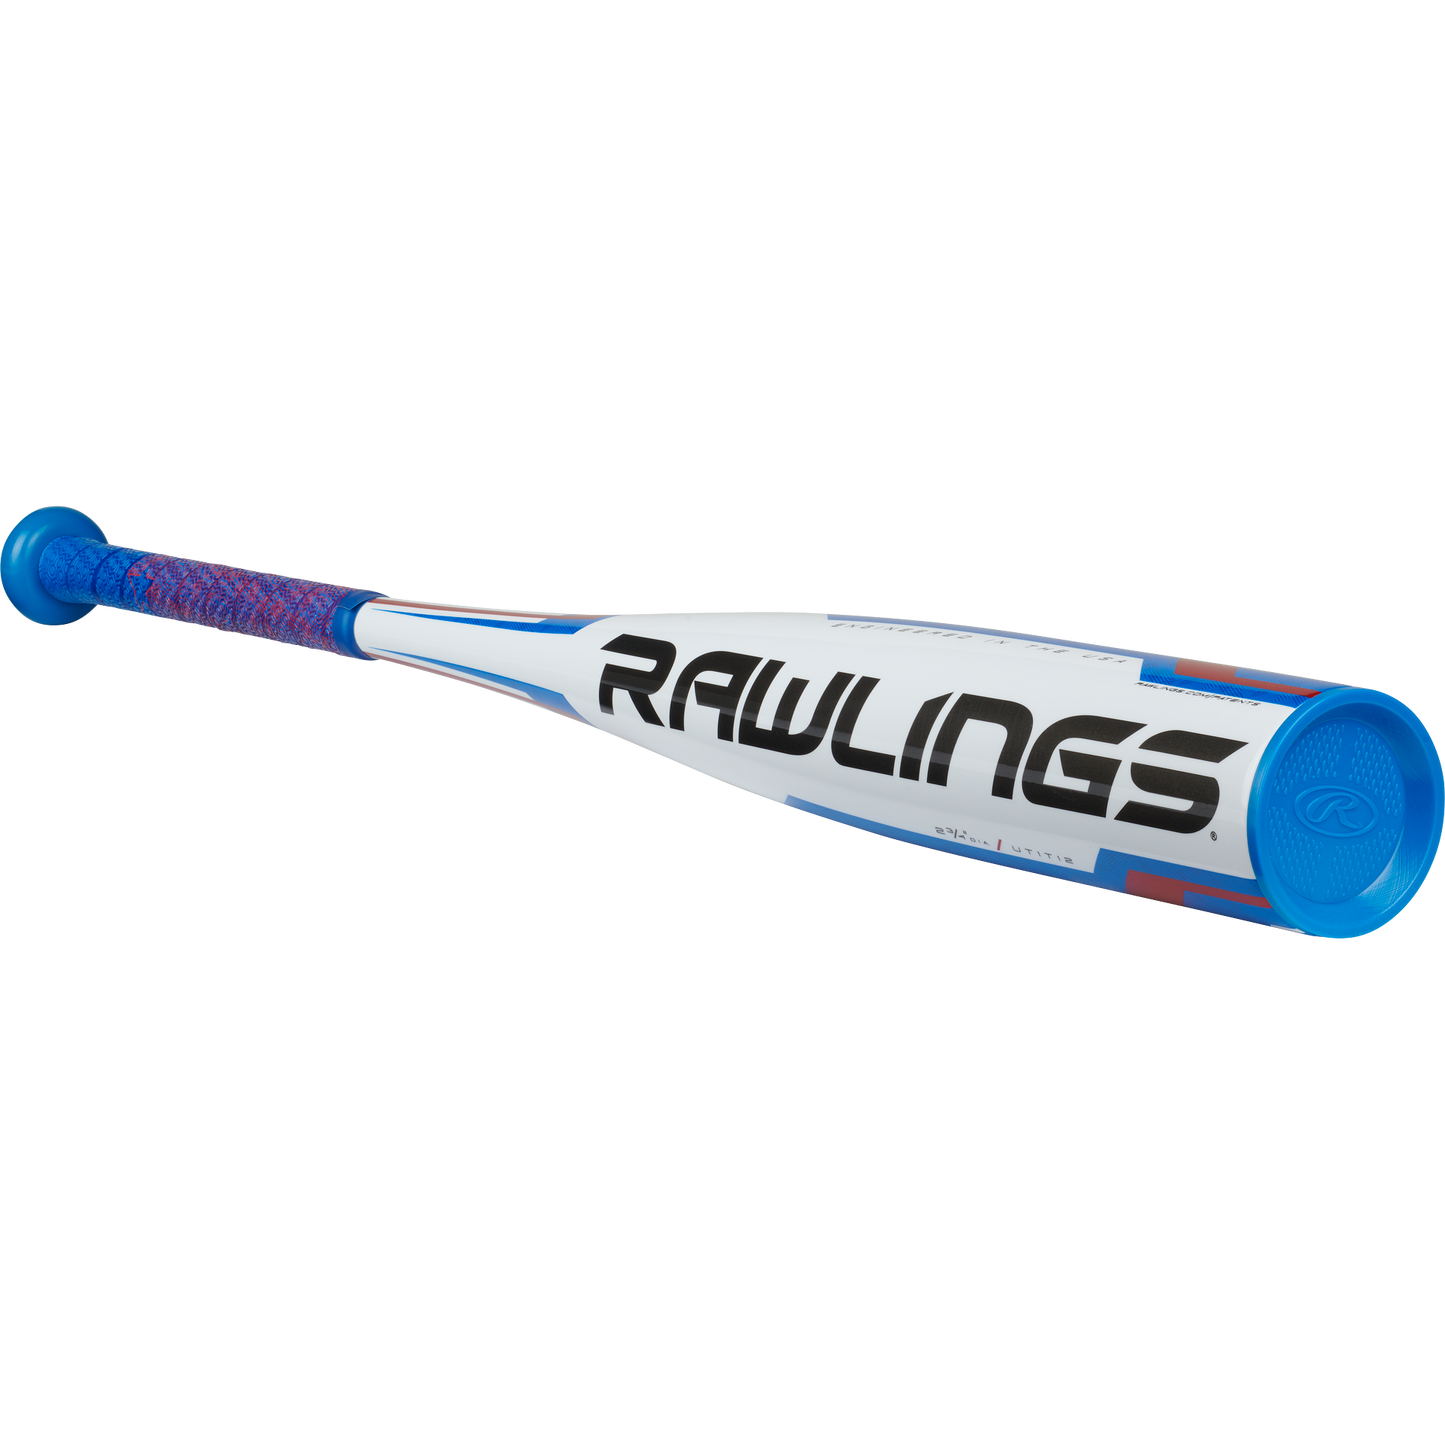 Rawlings-Baseball Bats-Guardian Baseball